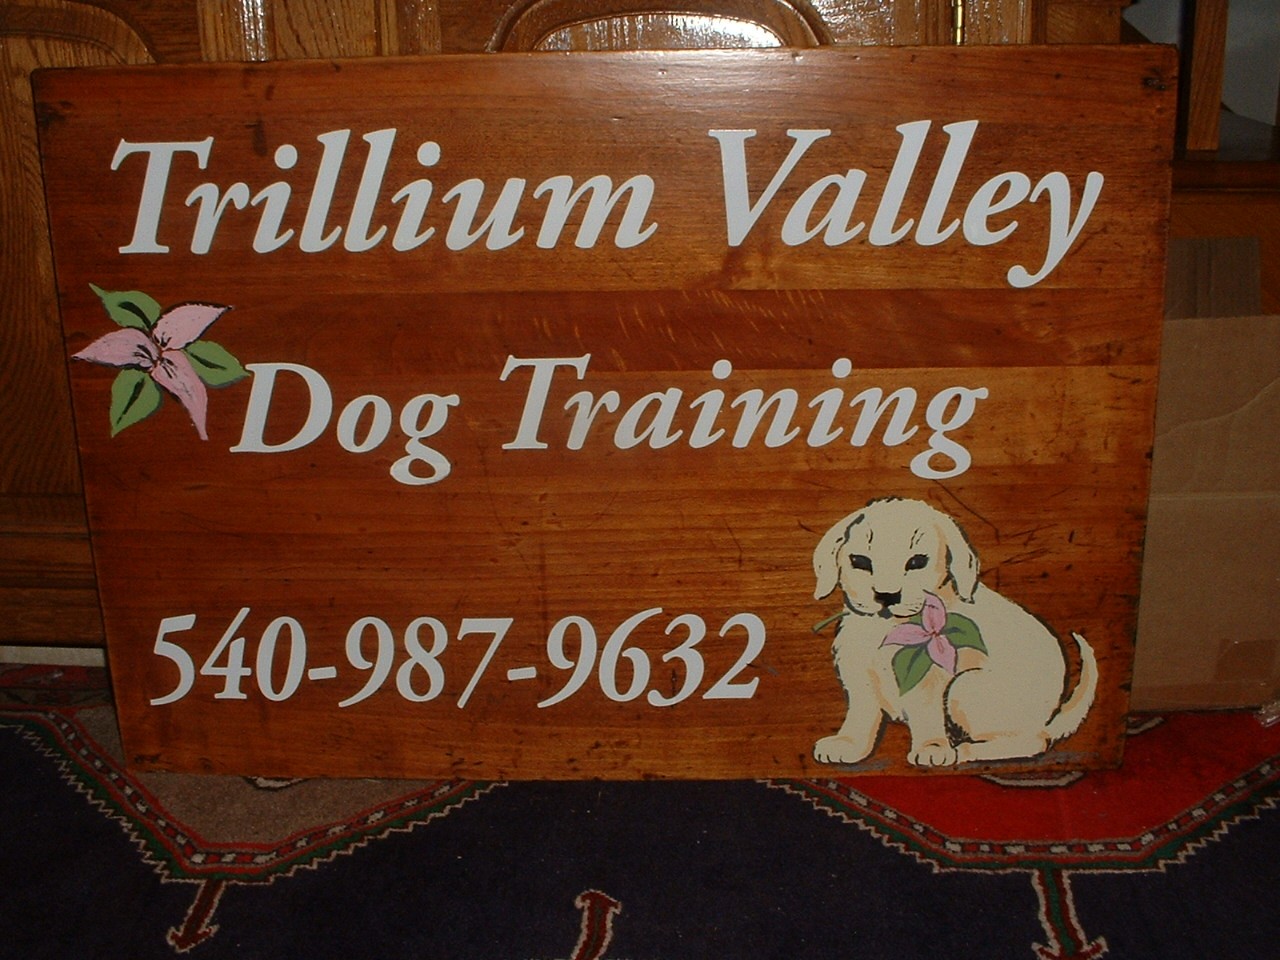 Trillium Valley Dog Training, LLC picture